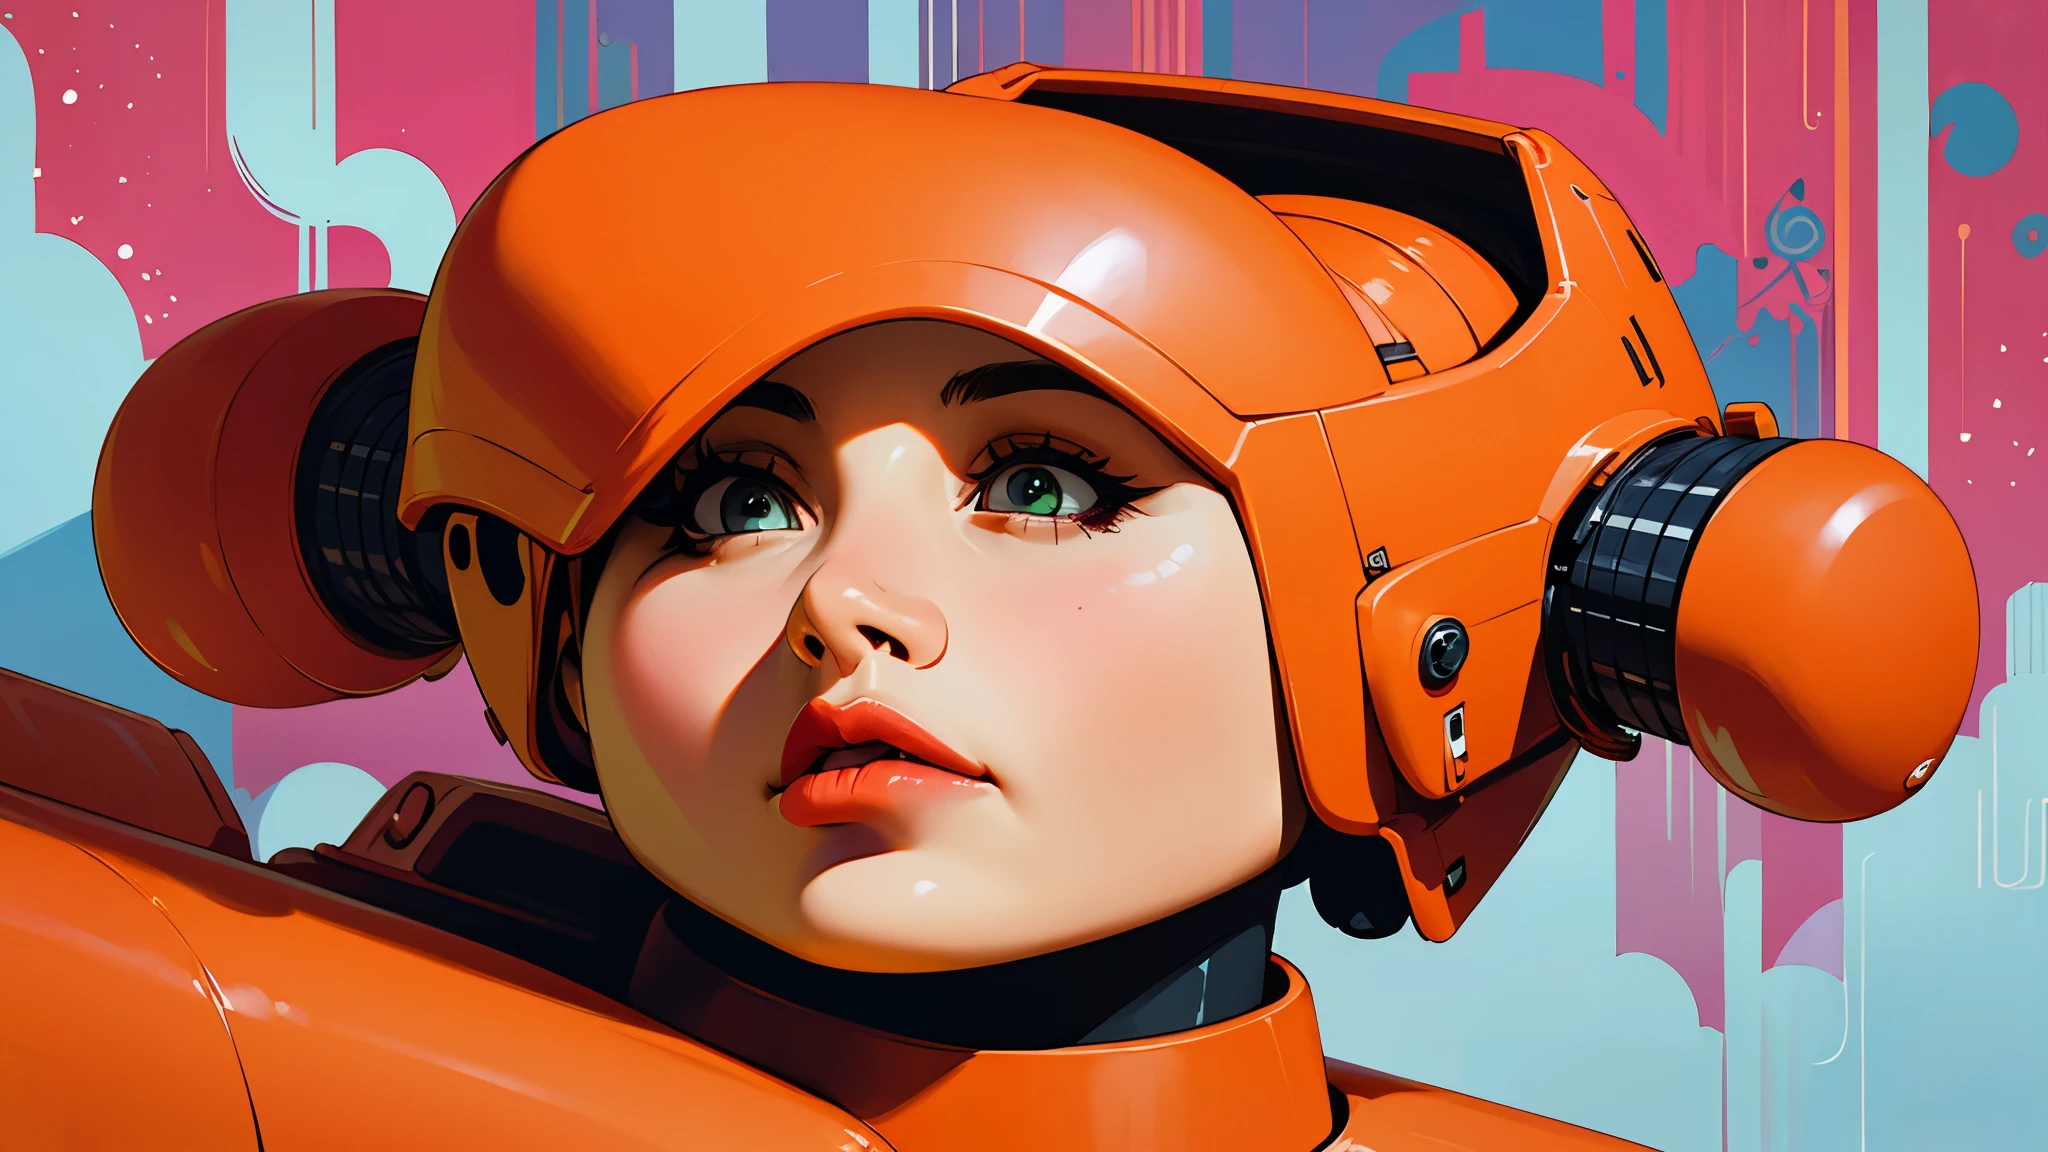 Selbstporträt eines Roboters mit einem Körper mit Energiekreisen und einem Android-Helm im Horror-Stil, Basierend auf „Der Zauberer von Oz“., Kampfroboter, technologischer Roboter, ultrarealistisches minimalistisches digitales Bild,